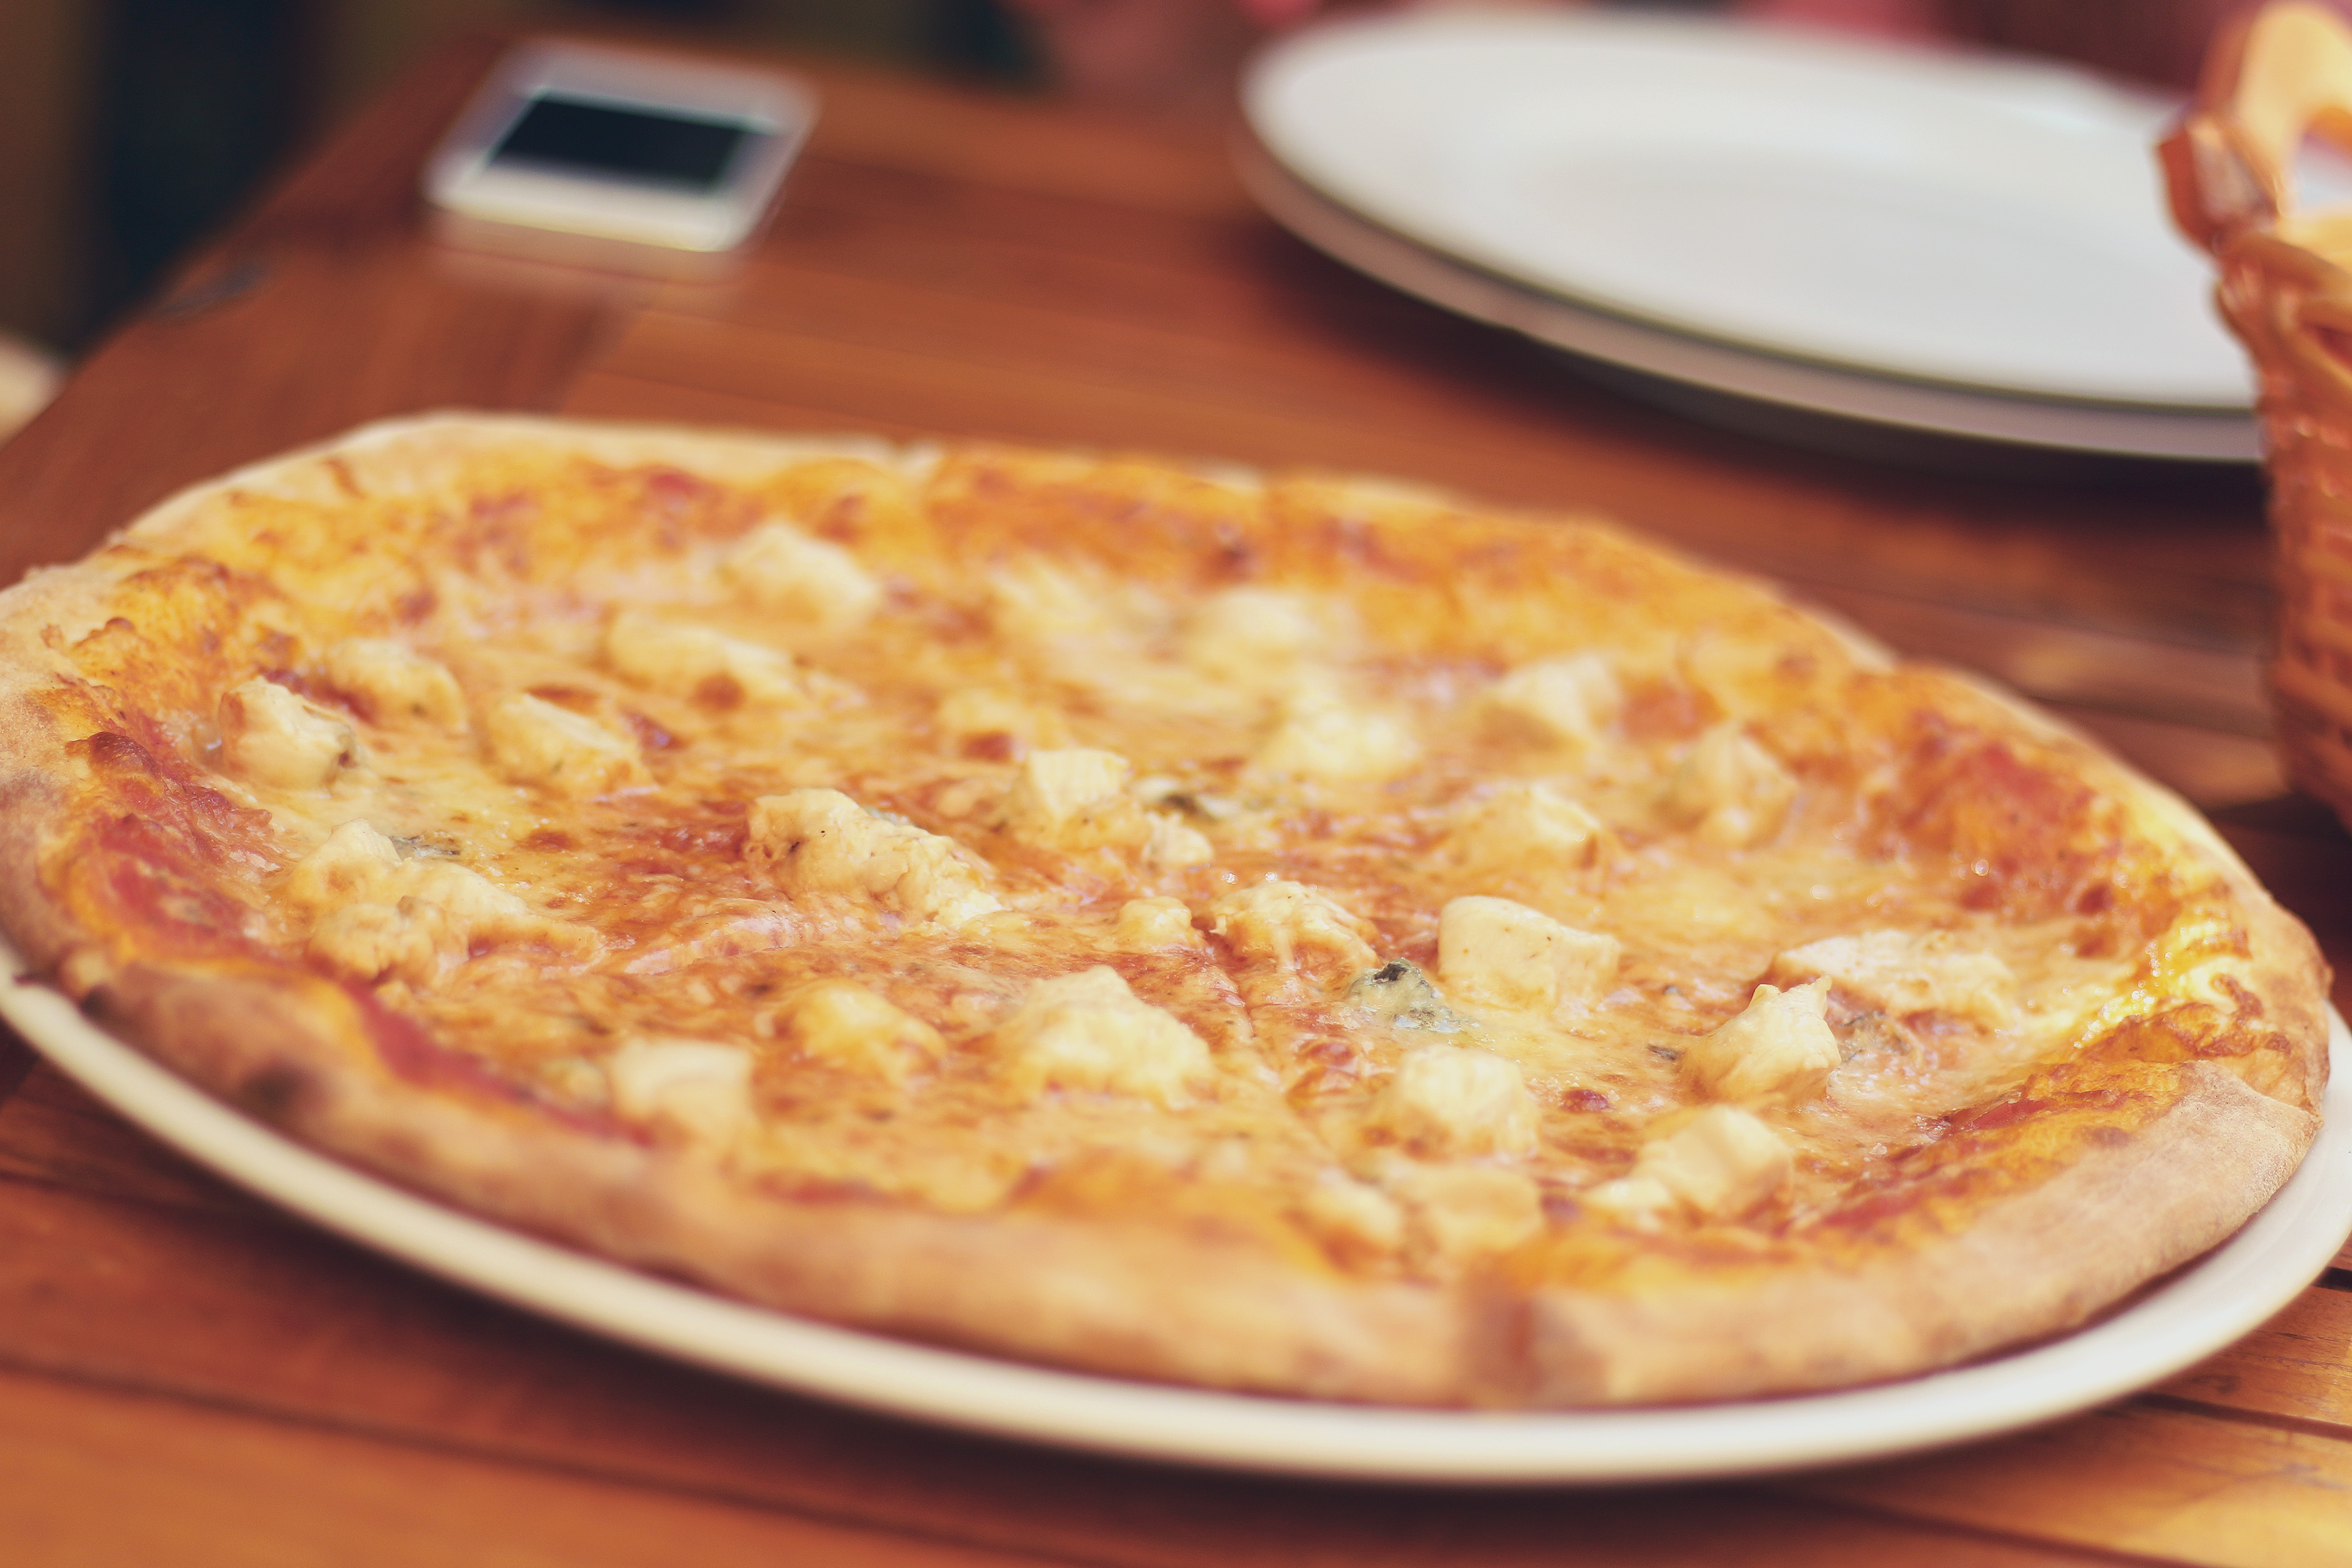  Razones para que nunca dejes de comer pizza